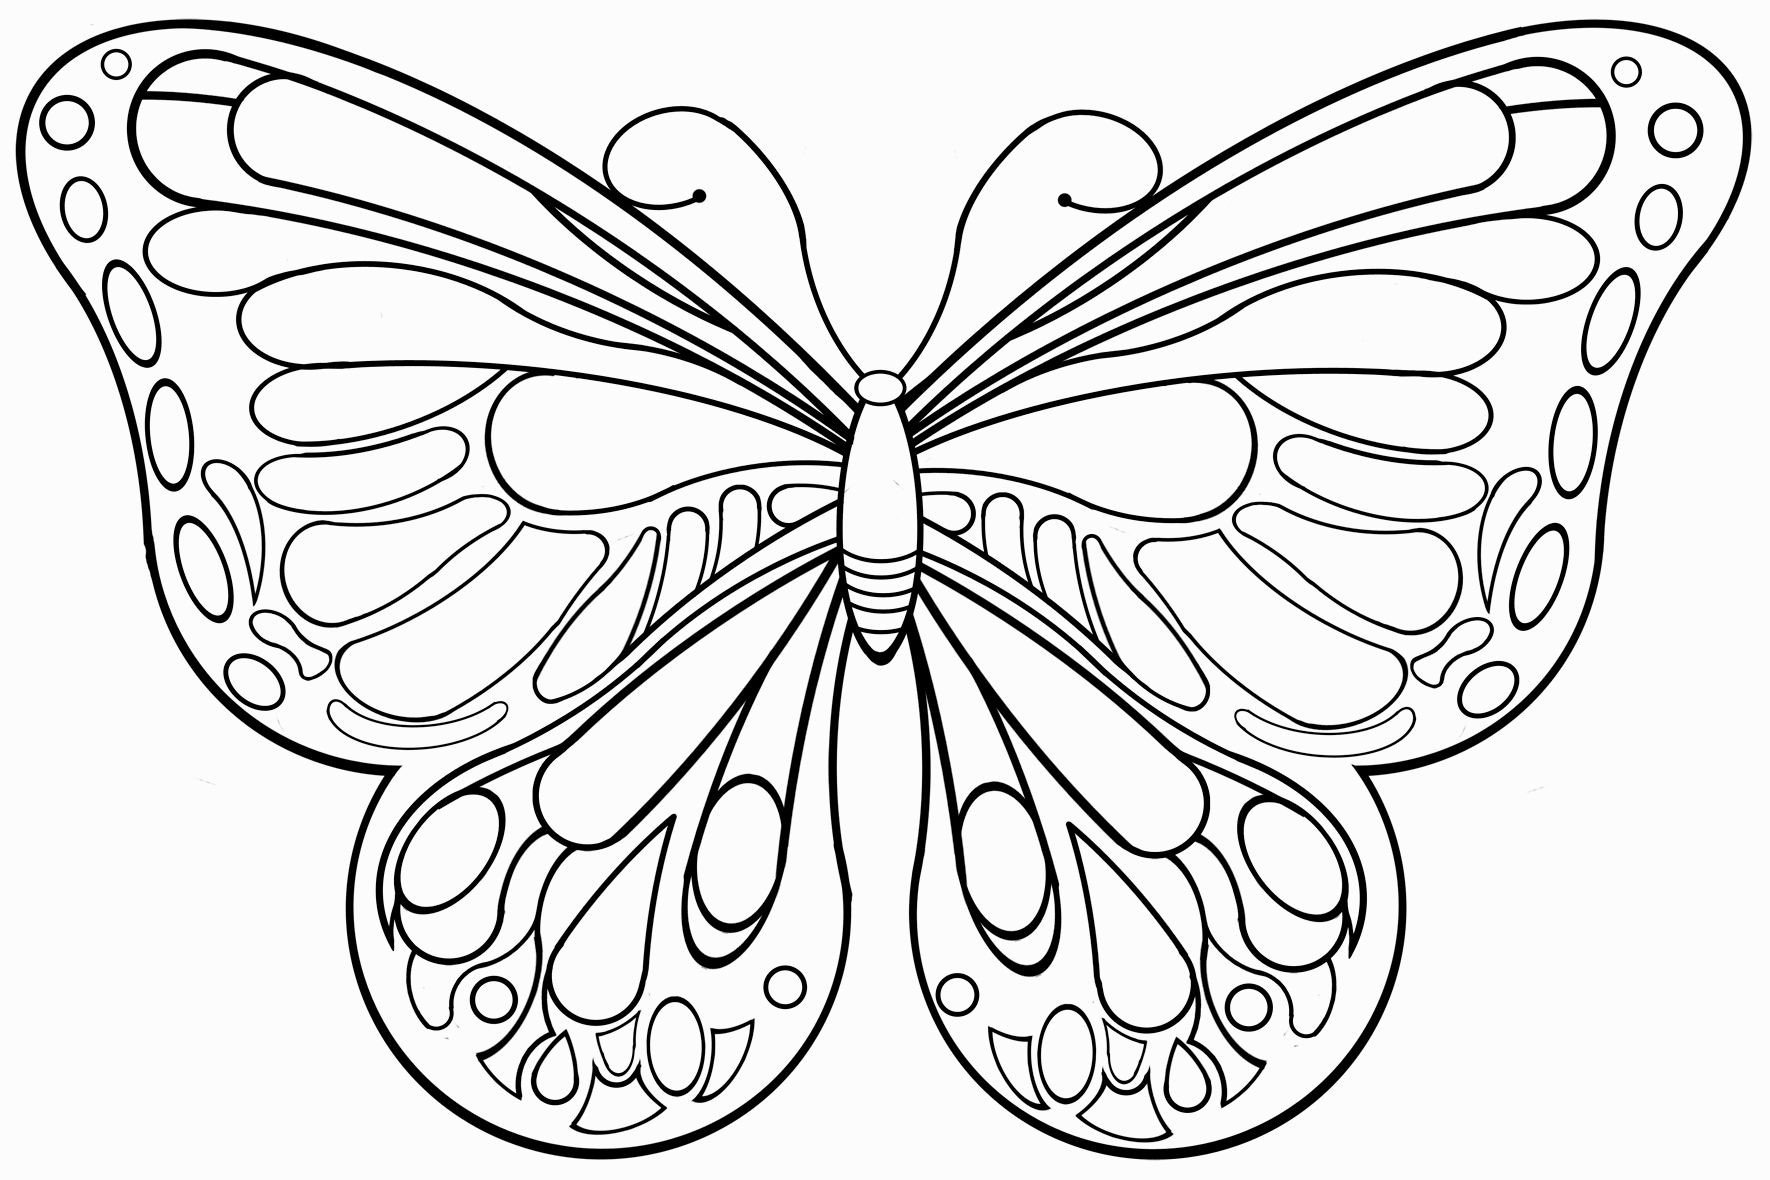 Schmetterlinge Ausmalbilder
 schmetterlinge zum ausdrucken Malvorlagentv